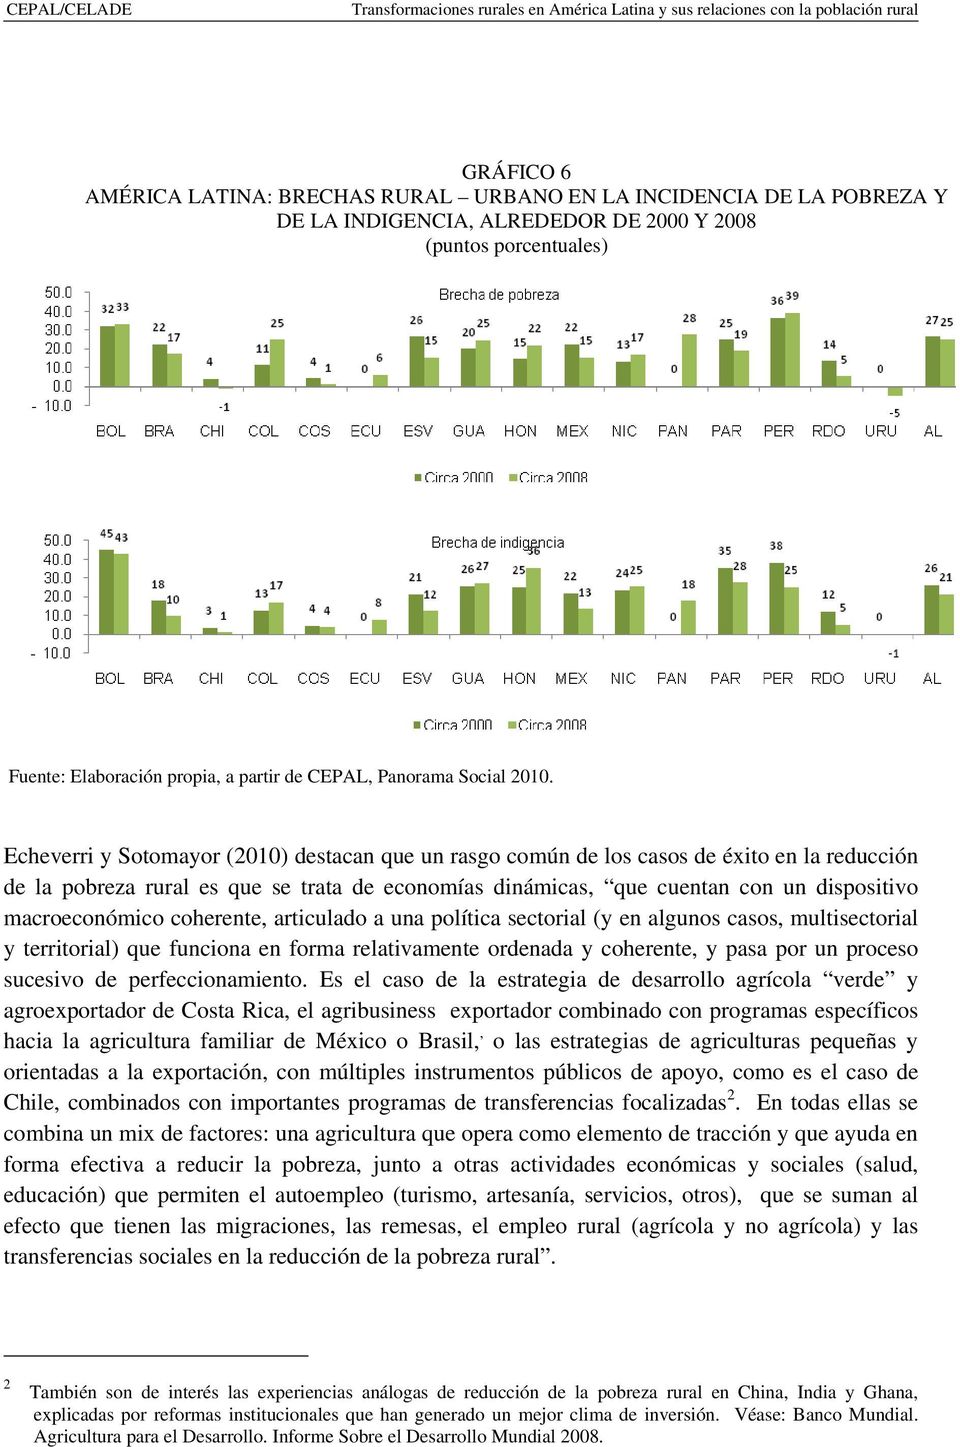 Echeverri y Sotomayor (2010) destacan que un rasgo común de los casos de éxito en la reducción de la pobreza rural es que se trata de economías dinámicas, que cuentan con un dispositivo